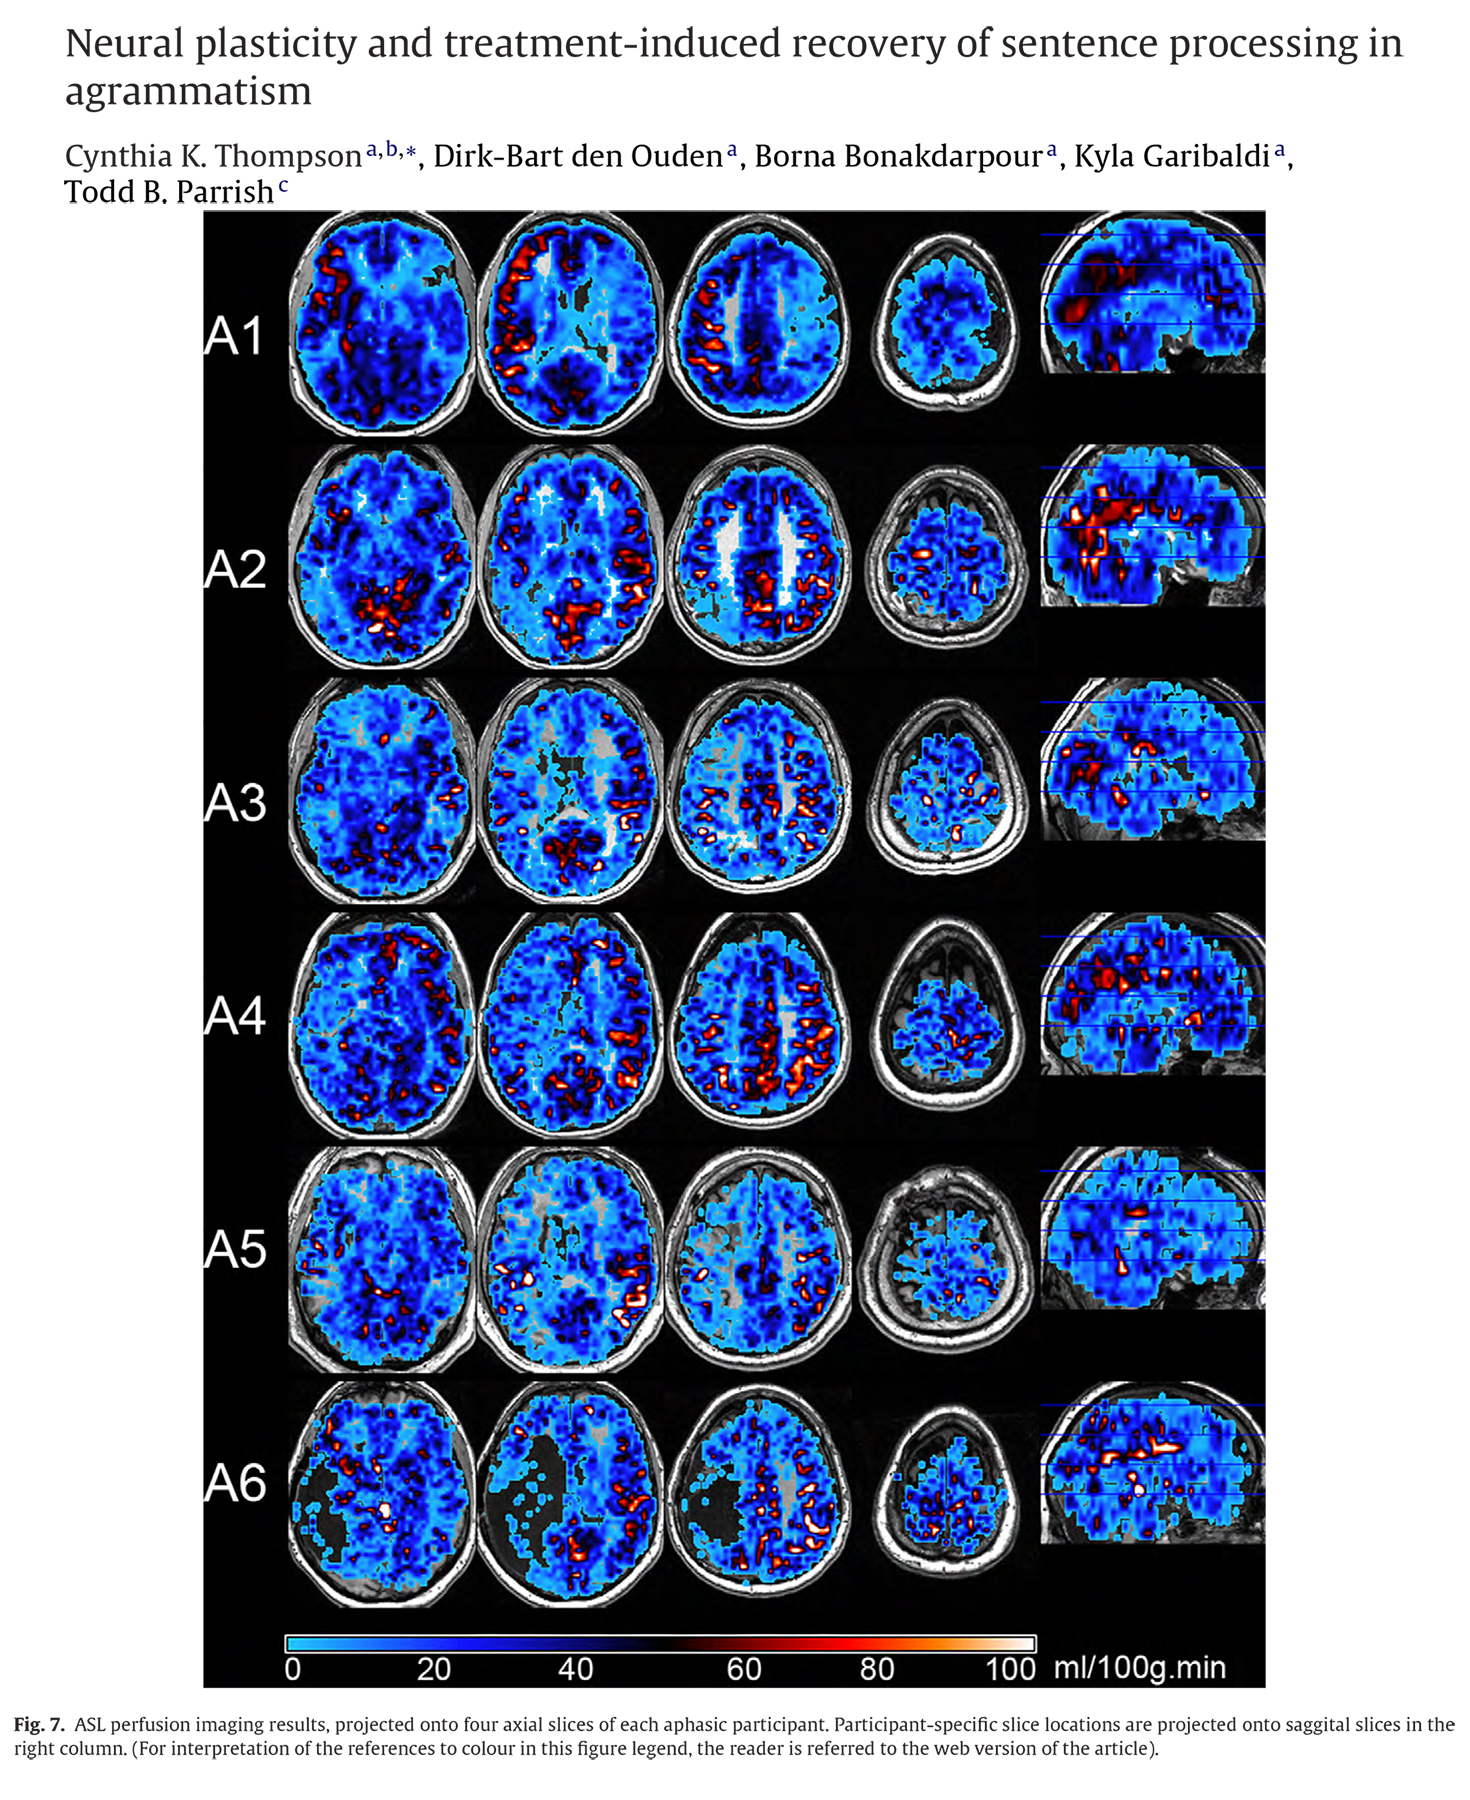 Neuropsychologia, 48 (2010) 3211-3227. 10.1016/j.neuropsychologia.2010.06.036